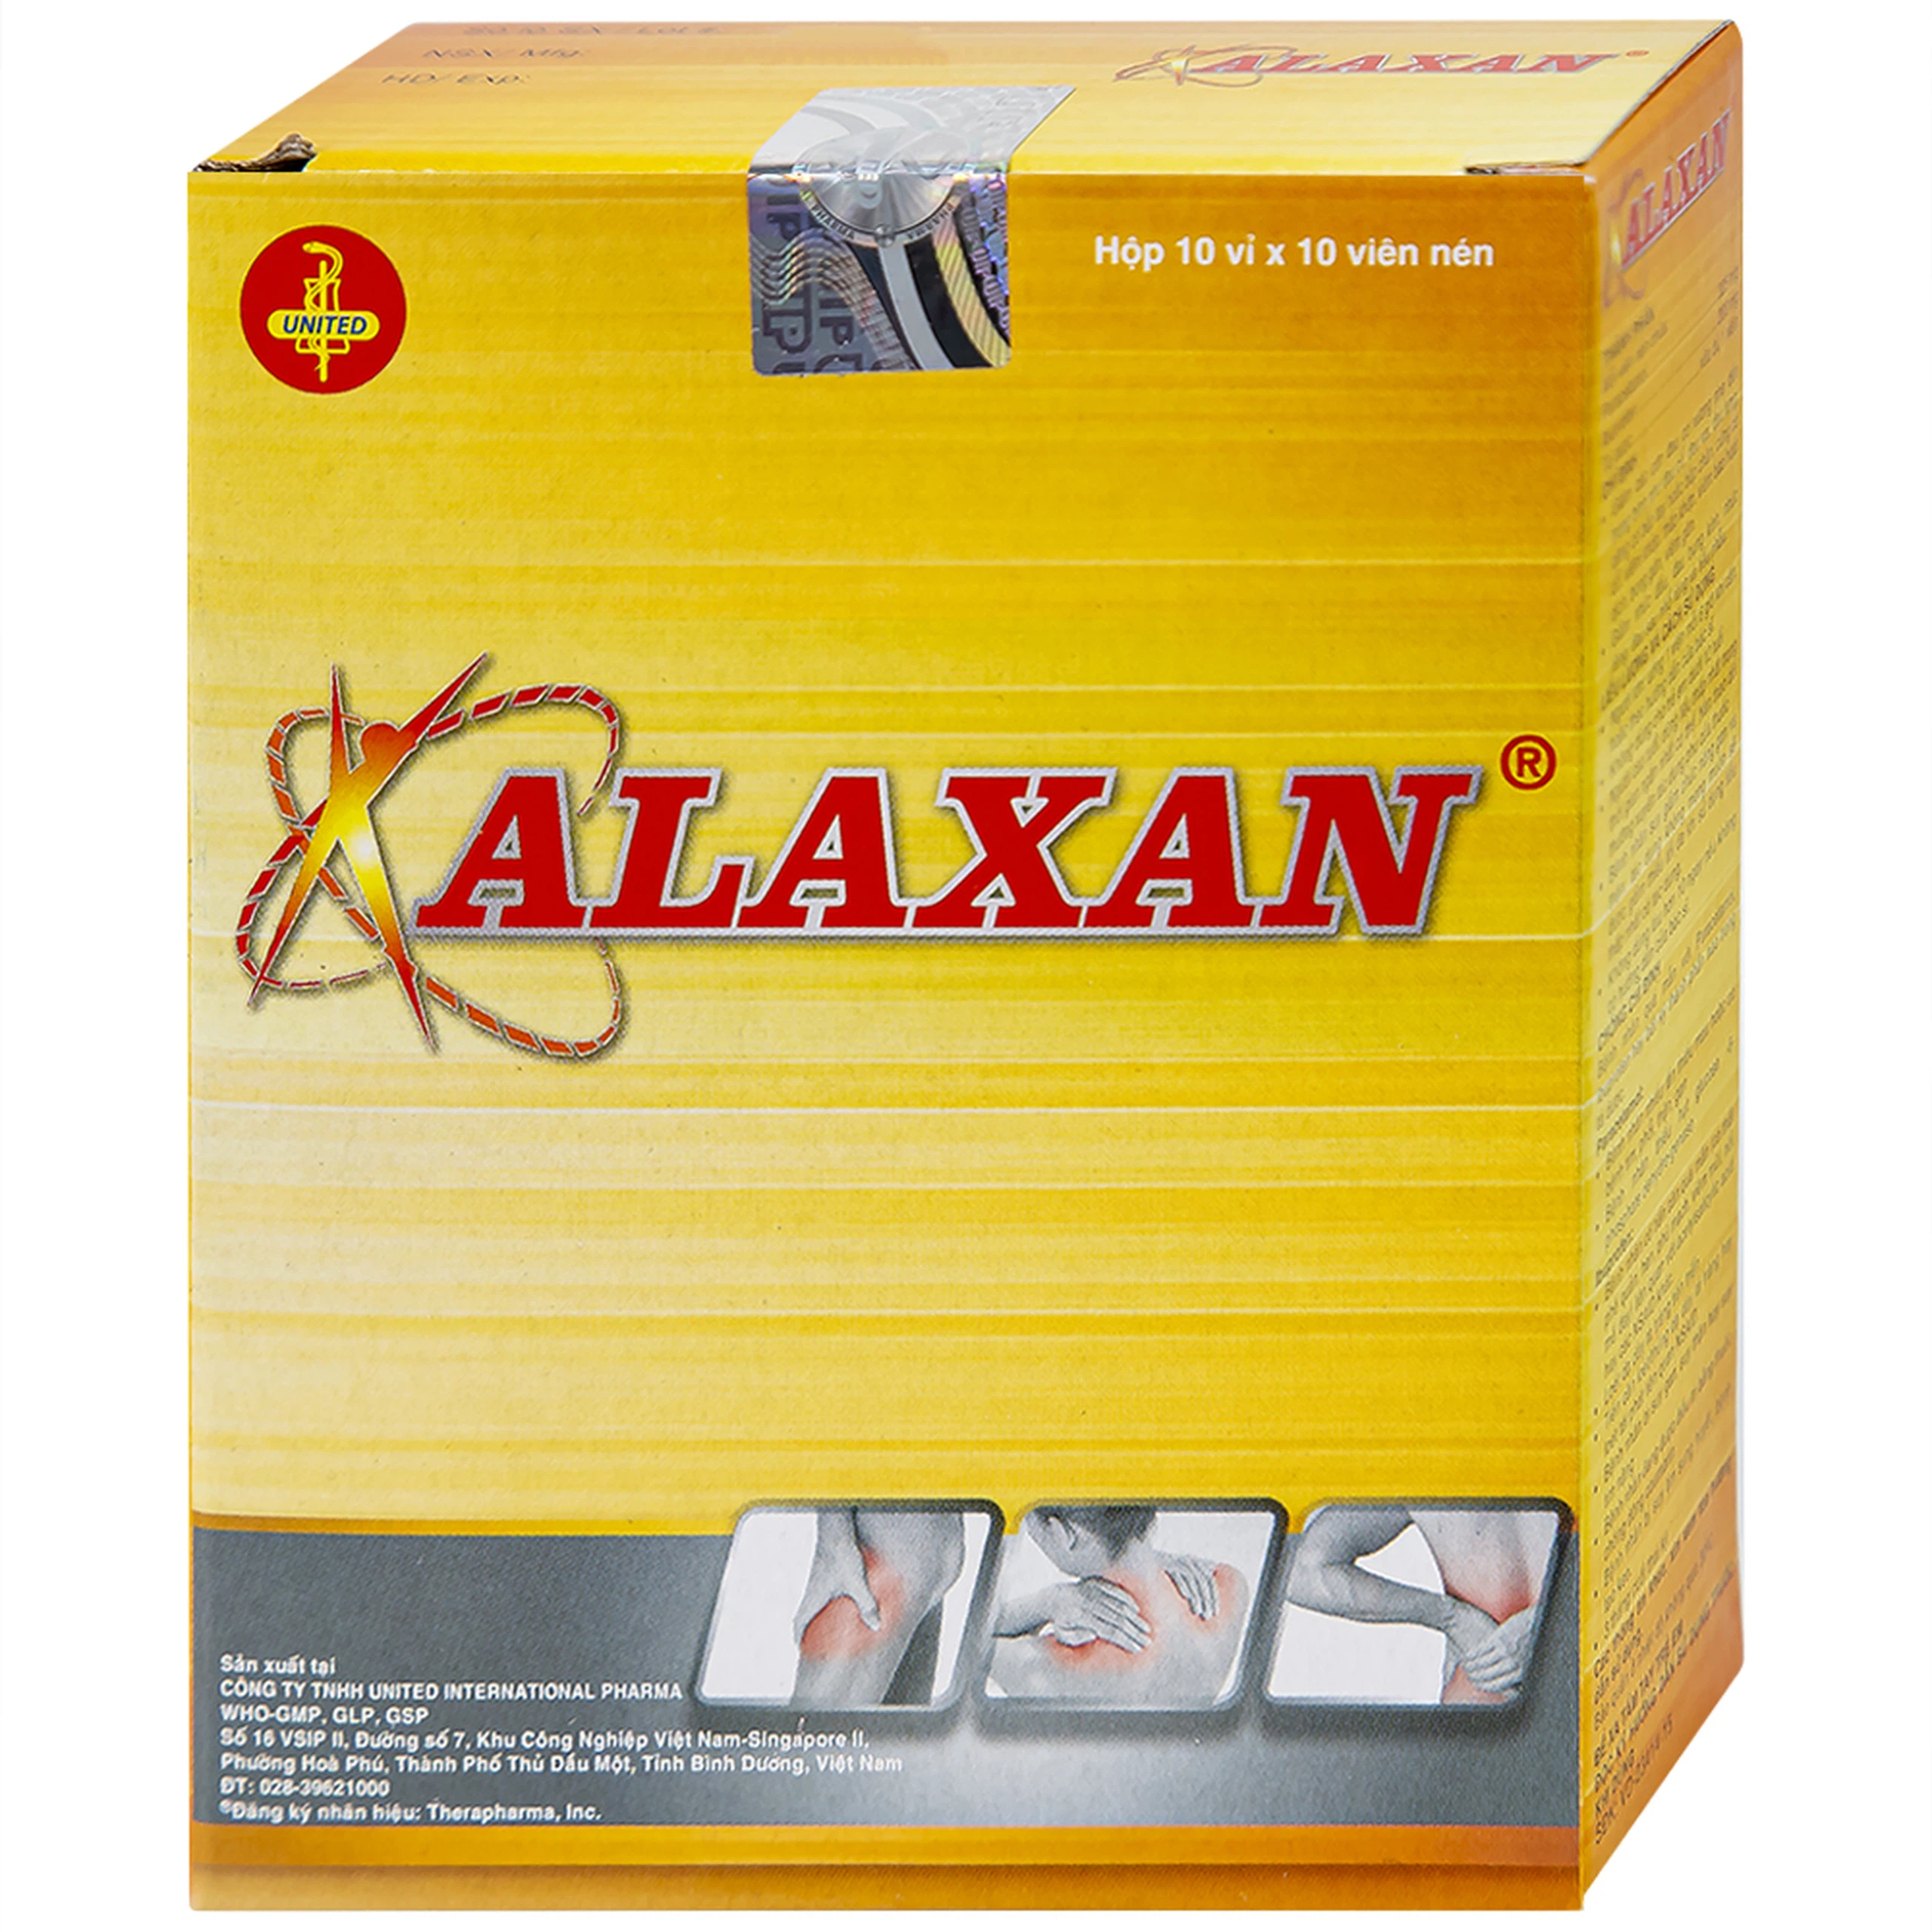 Thuốc Alaxan United giảm các cơn đau cơ xương, nhức đầu, đau bụng kinh, nhức răng (10 vỉ x 10 viên)